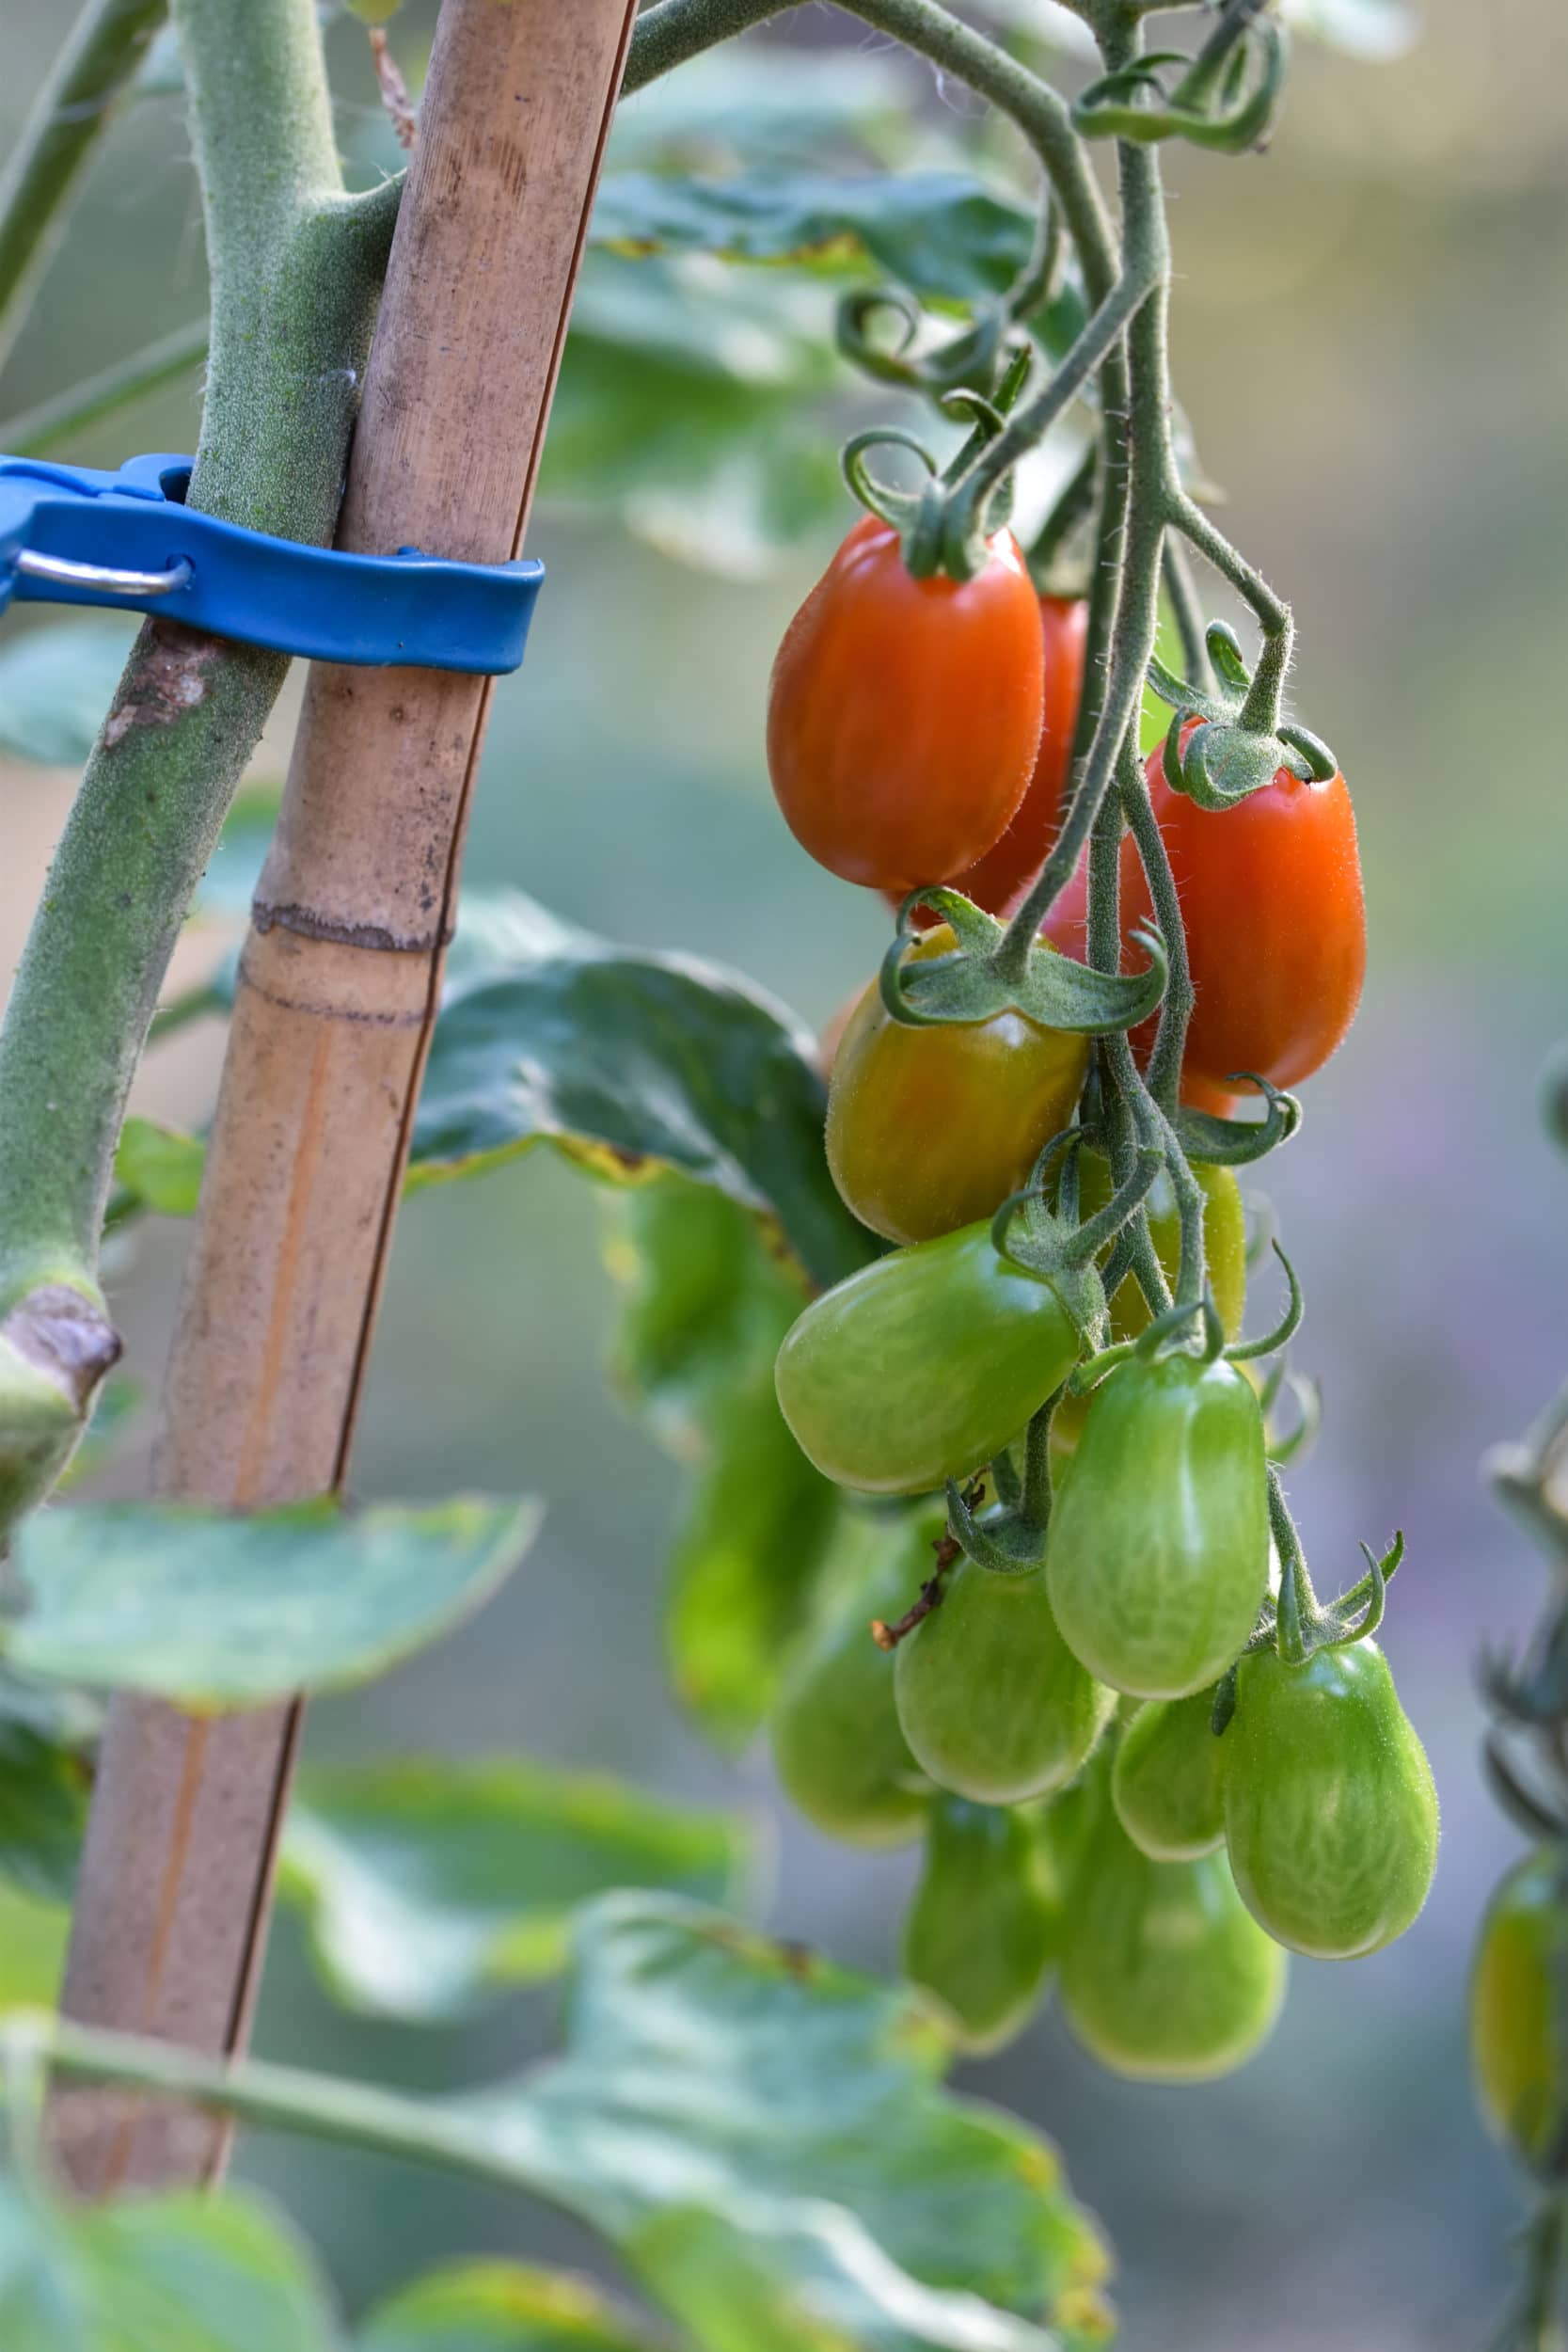 Odlingsråd för tomat